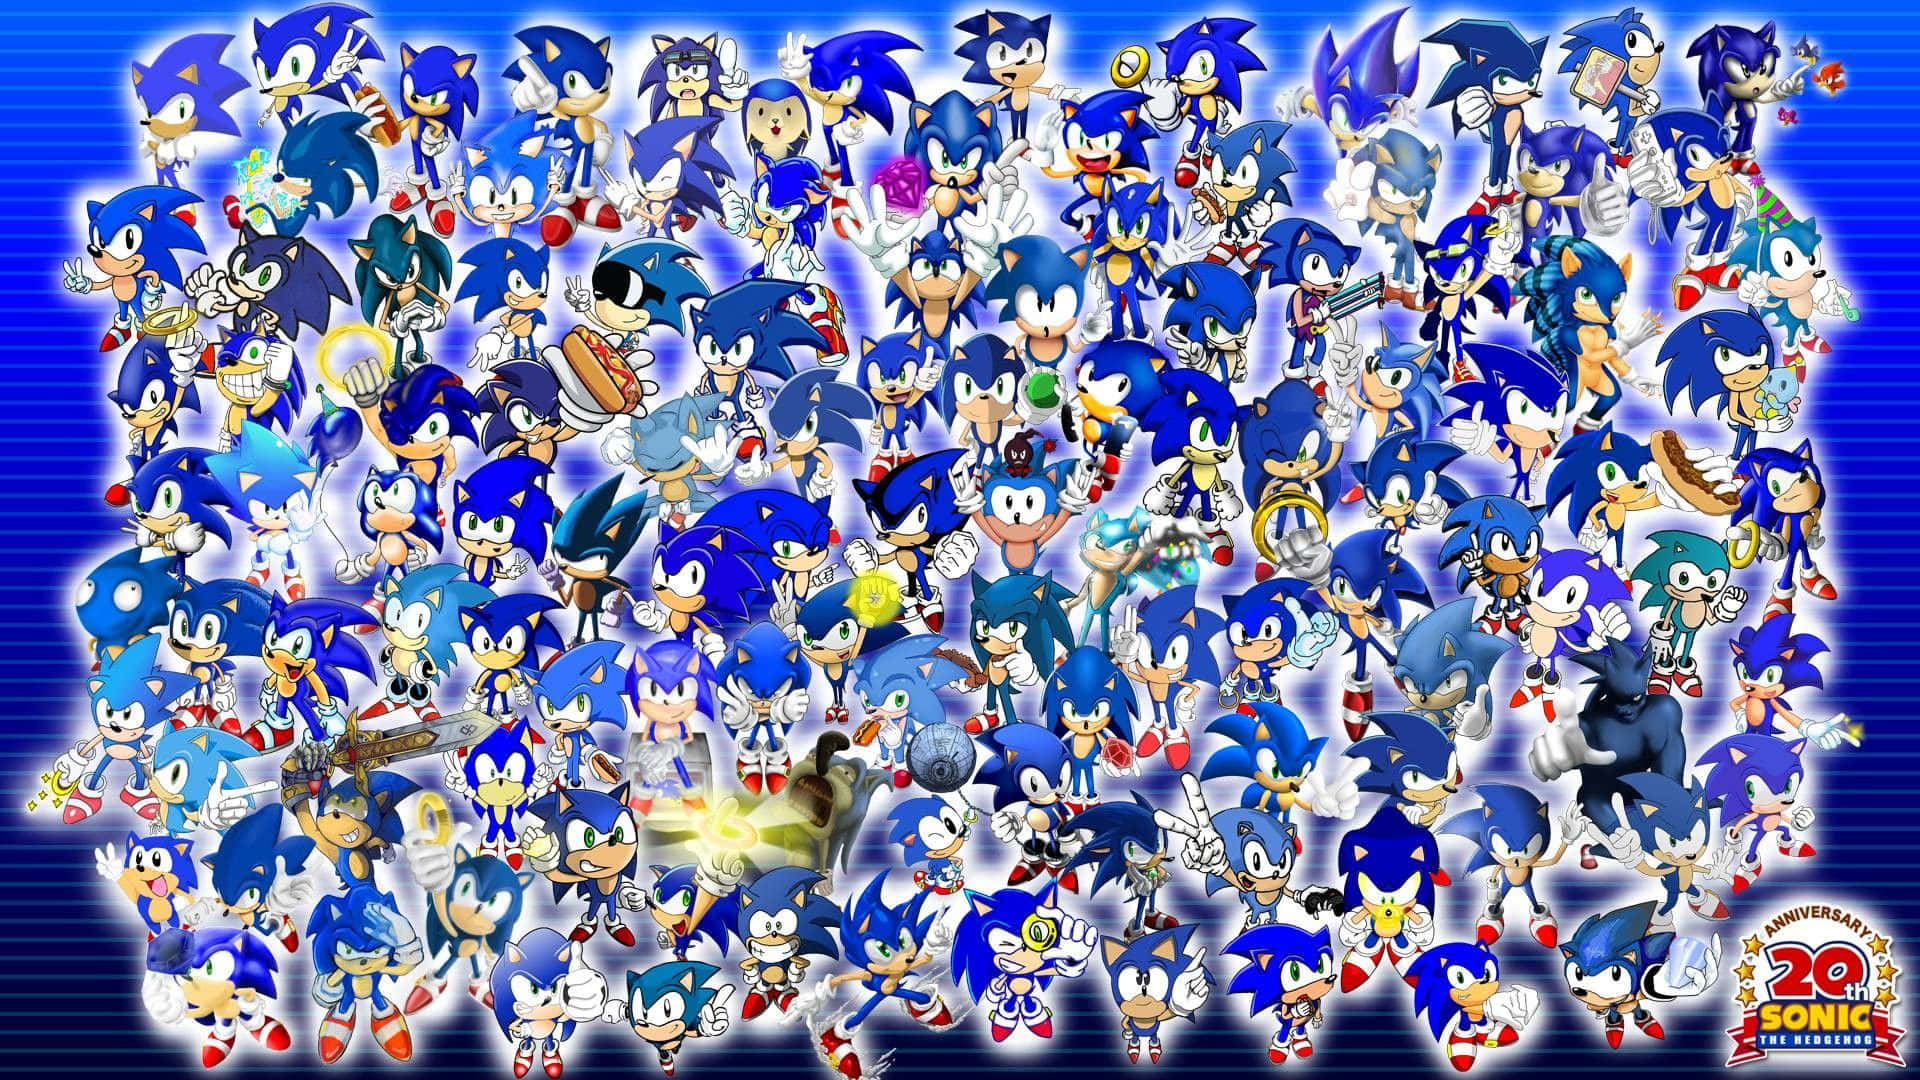 Gør dig klar til en højhastigheds oplevelse med Sonic The Hedgehog i fantastisk 4k opløsning! Wallpaper